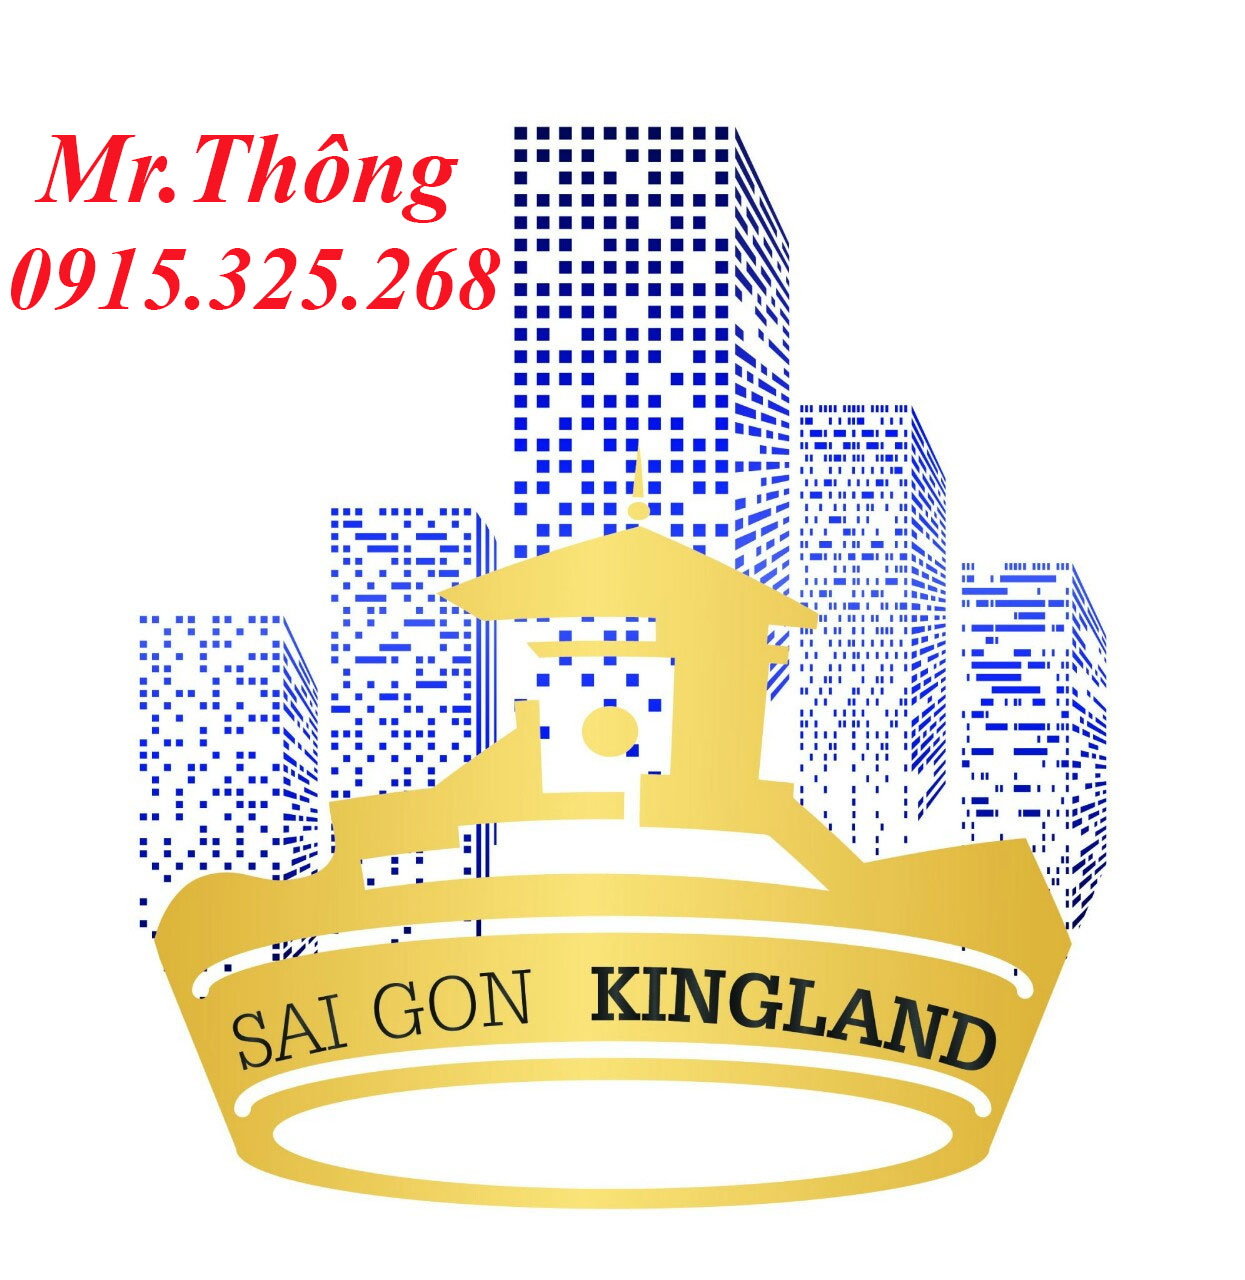 Bán gấp nhà mặt tiền đường Cao Thắng, Q3, gần Võ Văn Tần, DT 5x19m, HĐ thuê 120tr/th, giá 45.5 tỷ